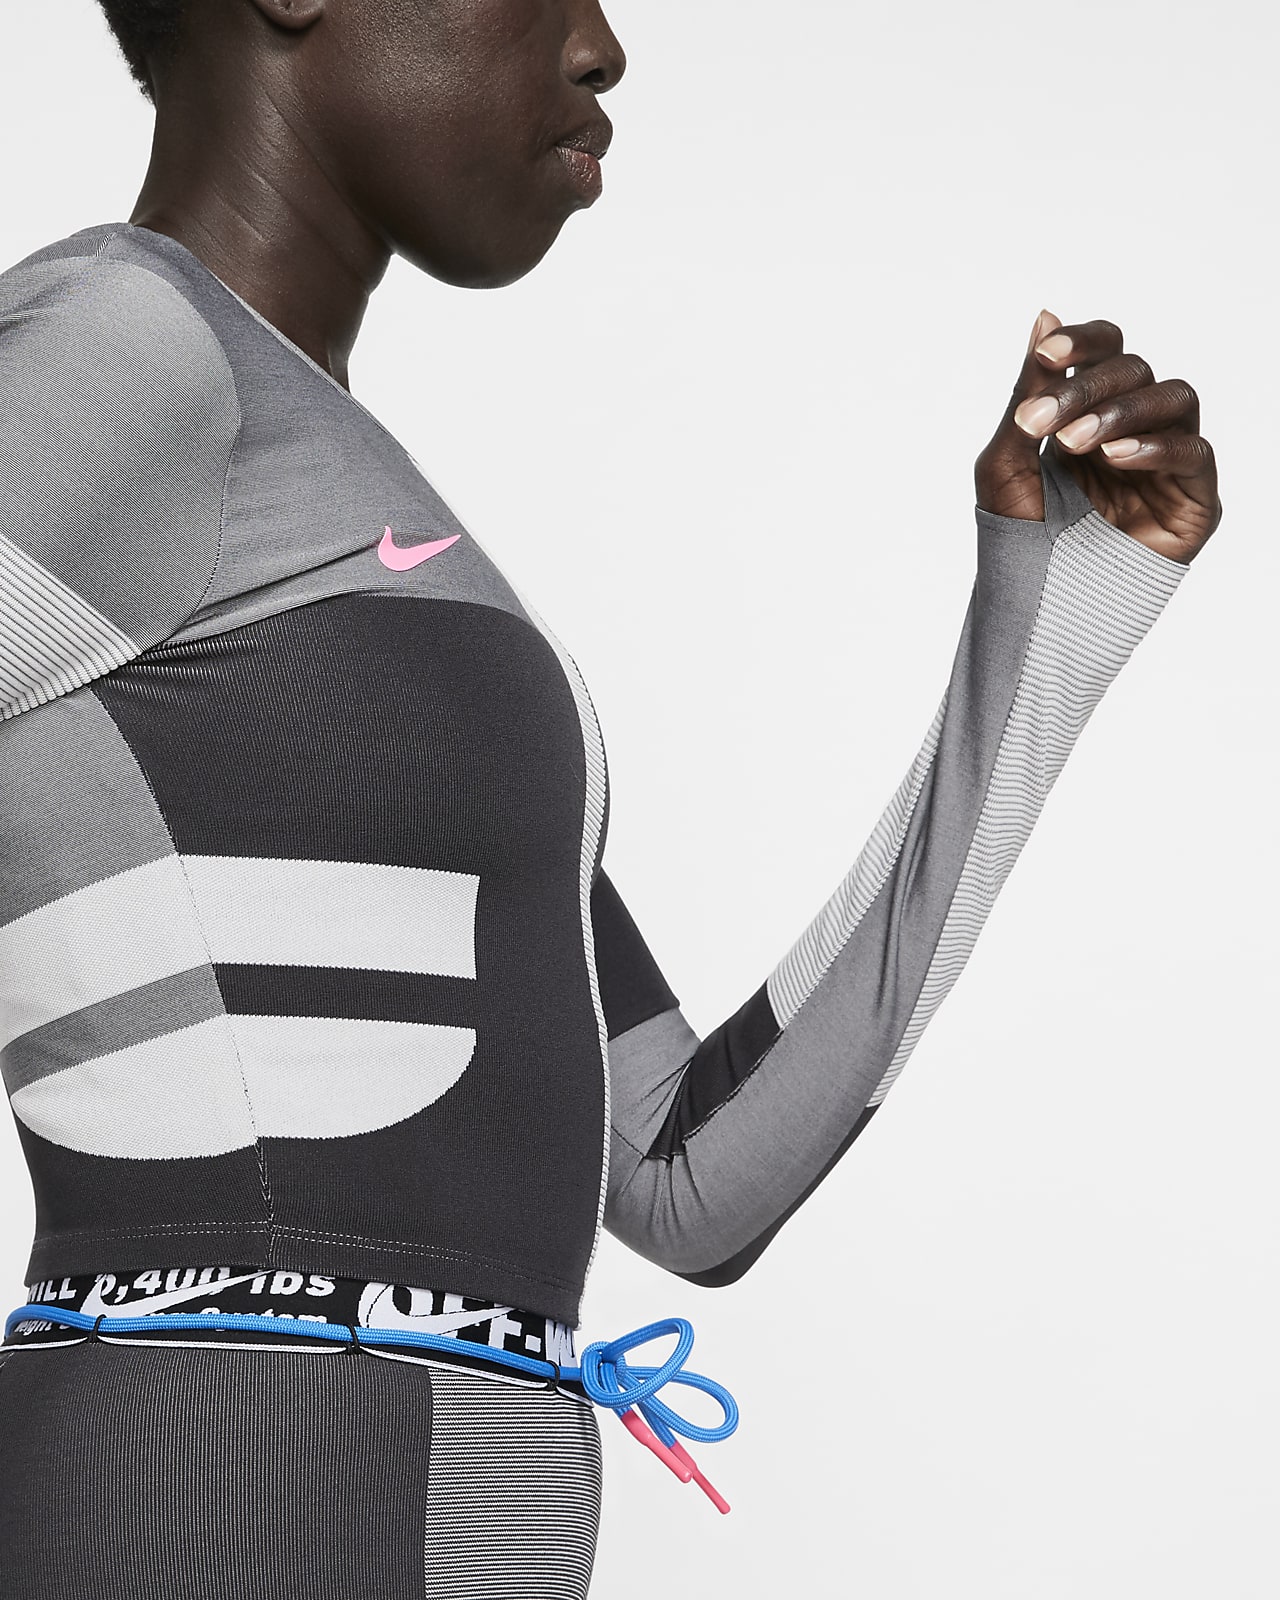 Nike x Off-White™ Women’s Running Top